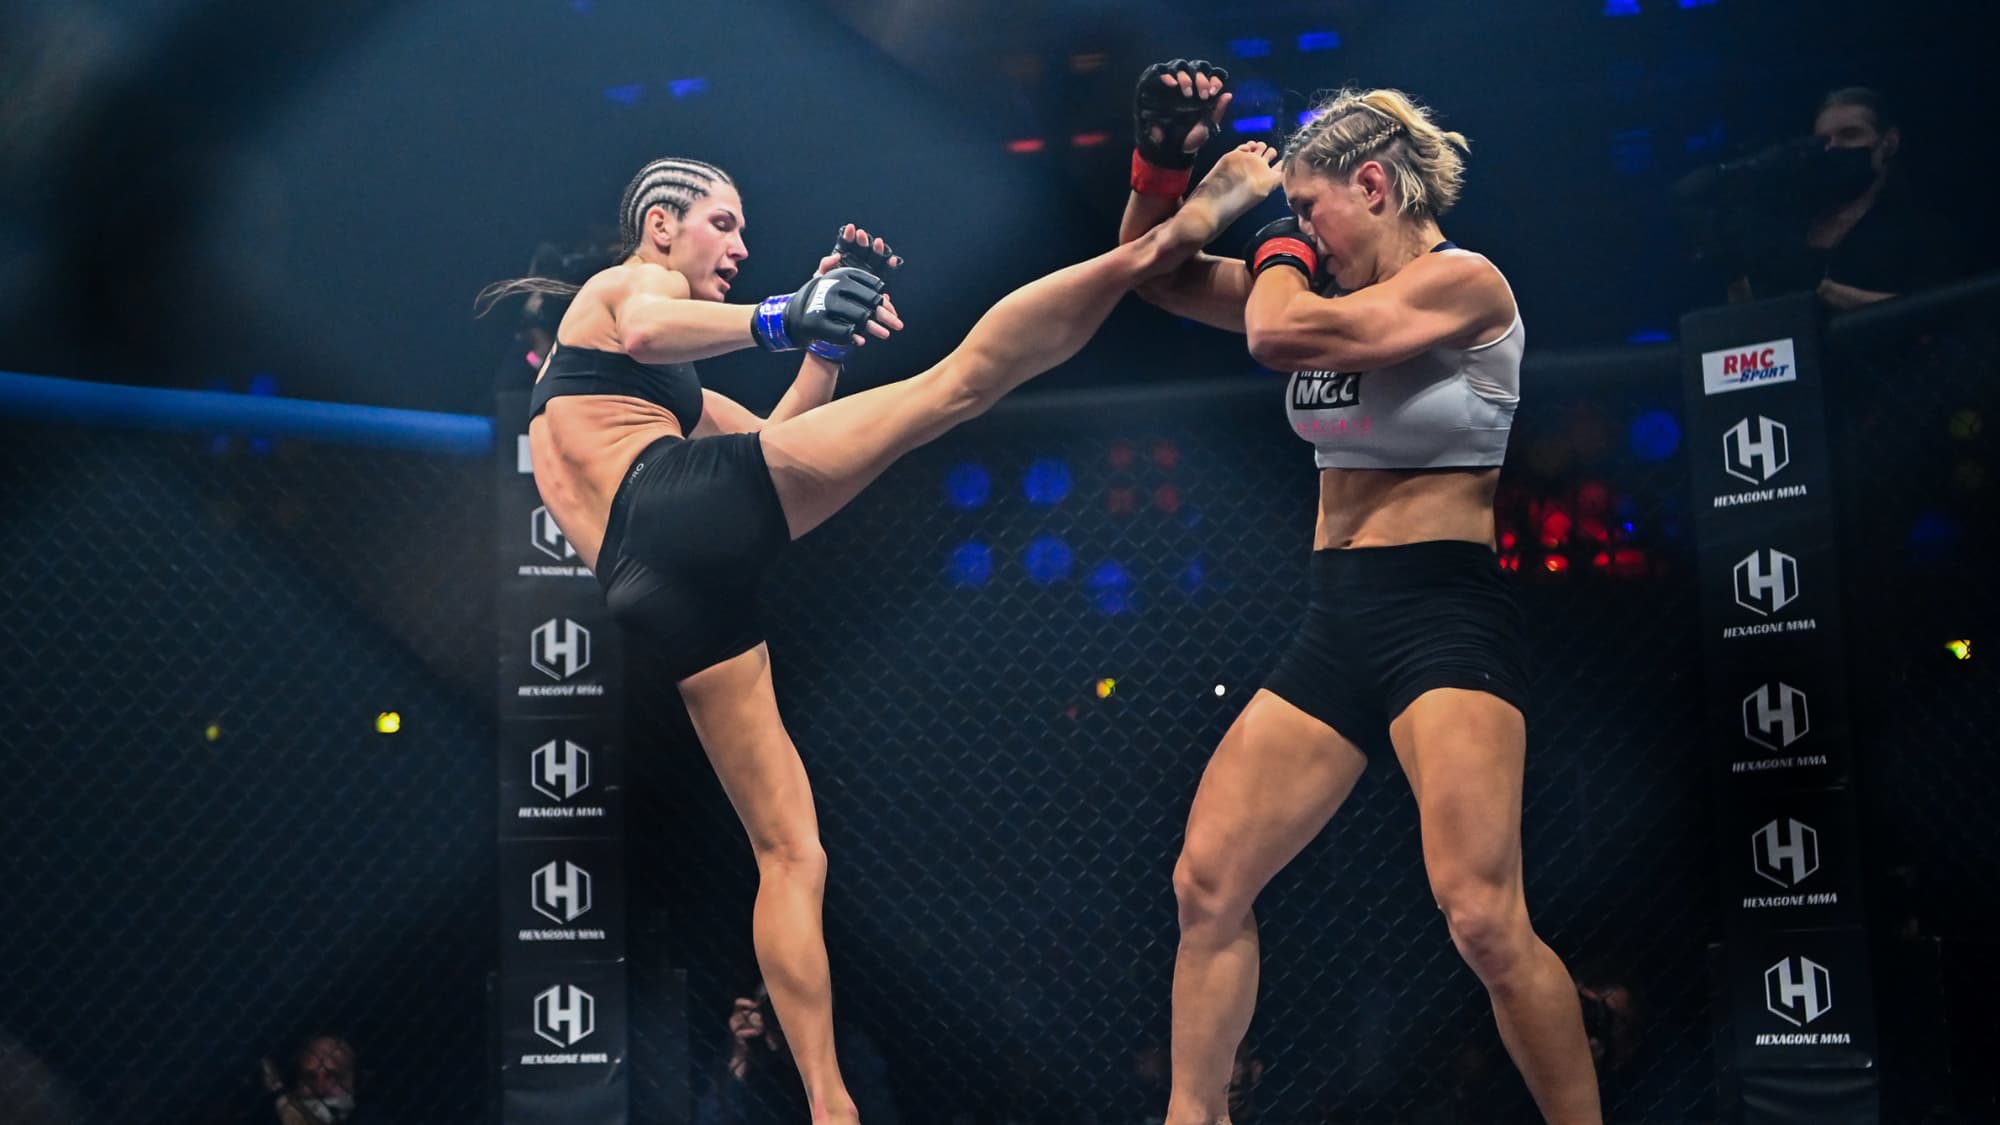 Boxen, UFC und Hexagone MMA: Ein Abend voller Kämpfe bei RMC Sport